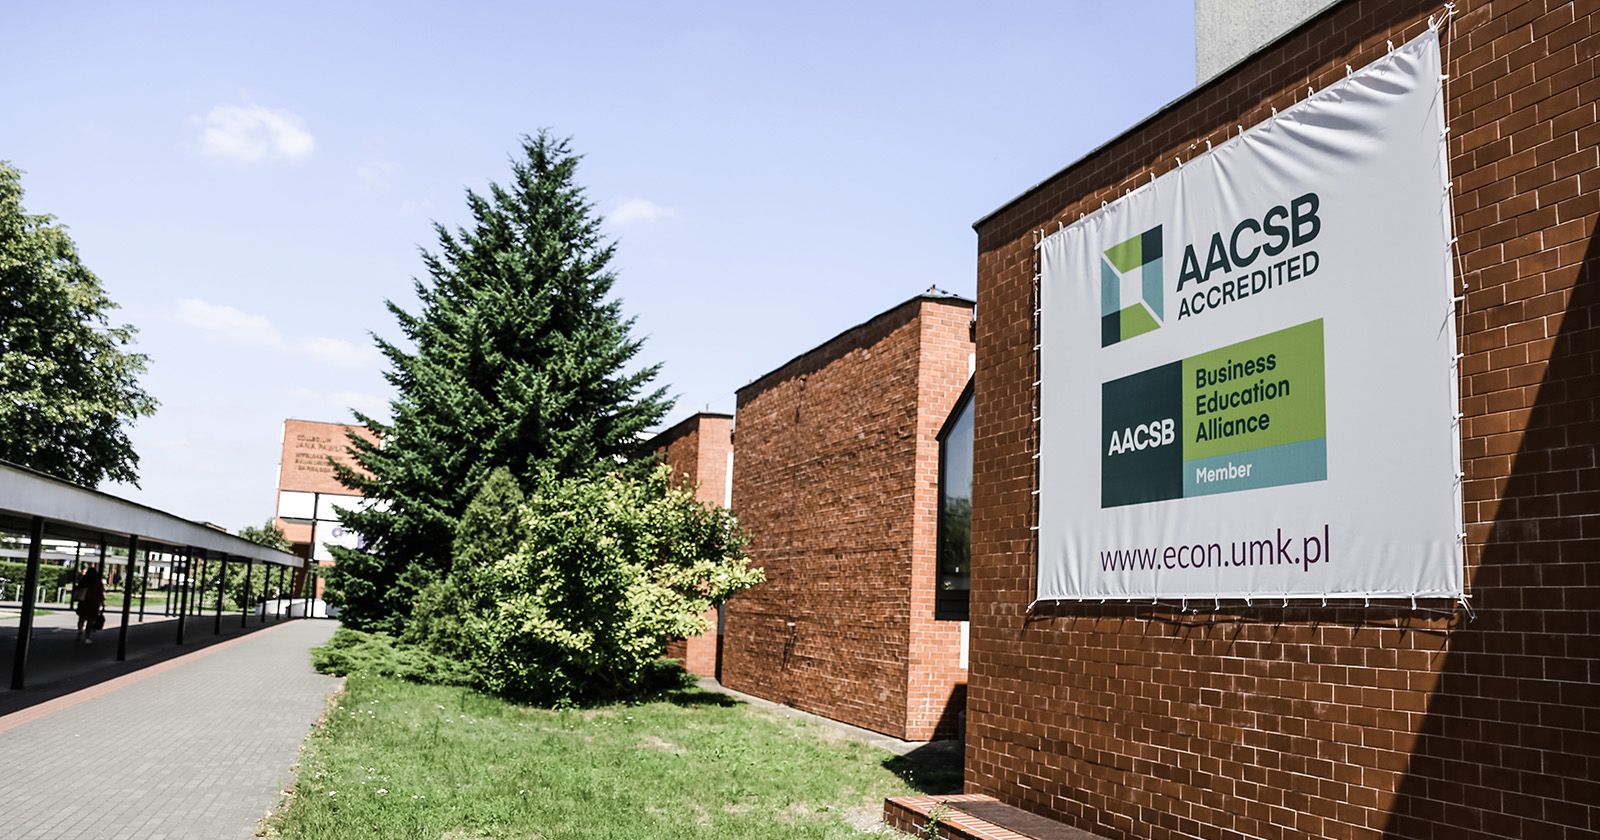 Po raz pierwszy akredytację AACSB Wydział Nauk Ekonomicznych i Zarządzania otrzymał w 2015 roku Po raz pierwszy akredytację AACSB Wydział Nauk Ekonomicznych i Zarządzania otrzymał w 2015 roku